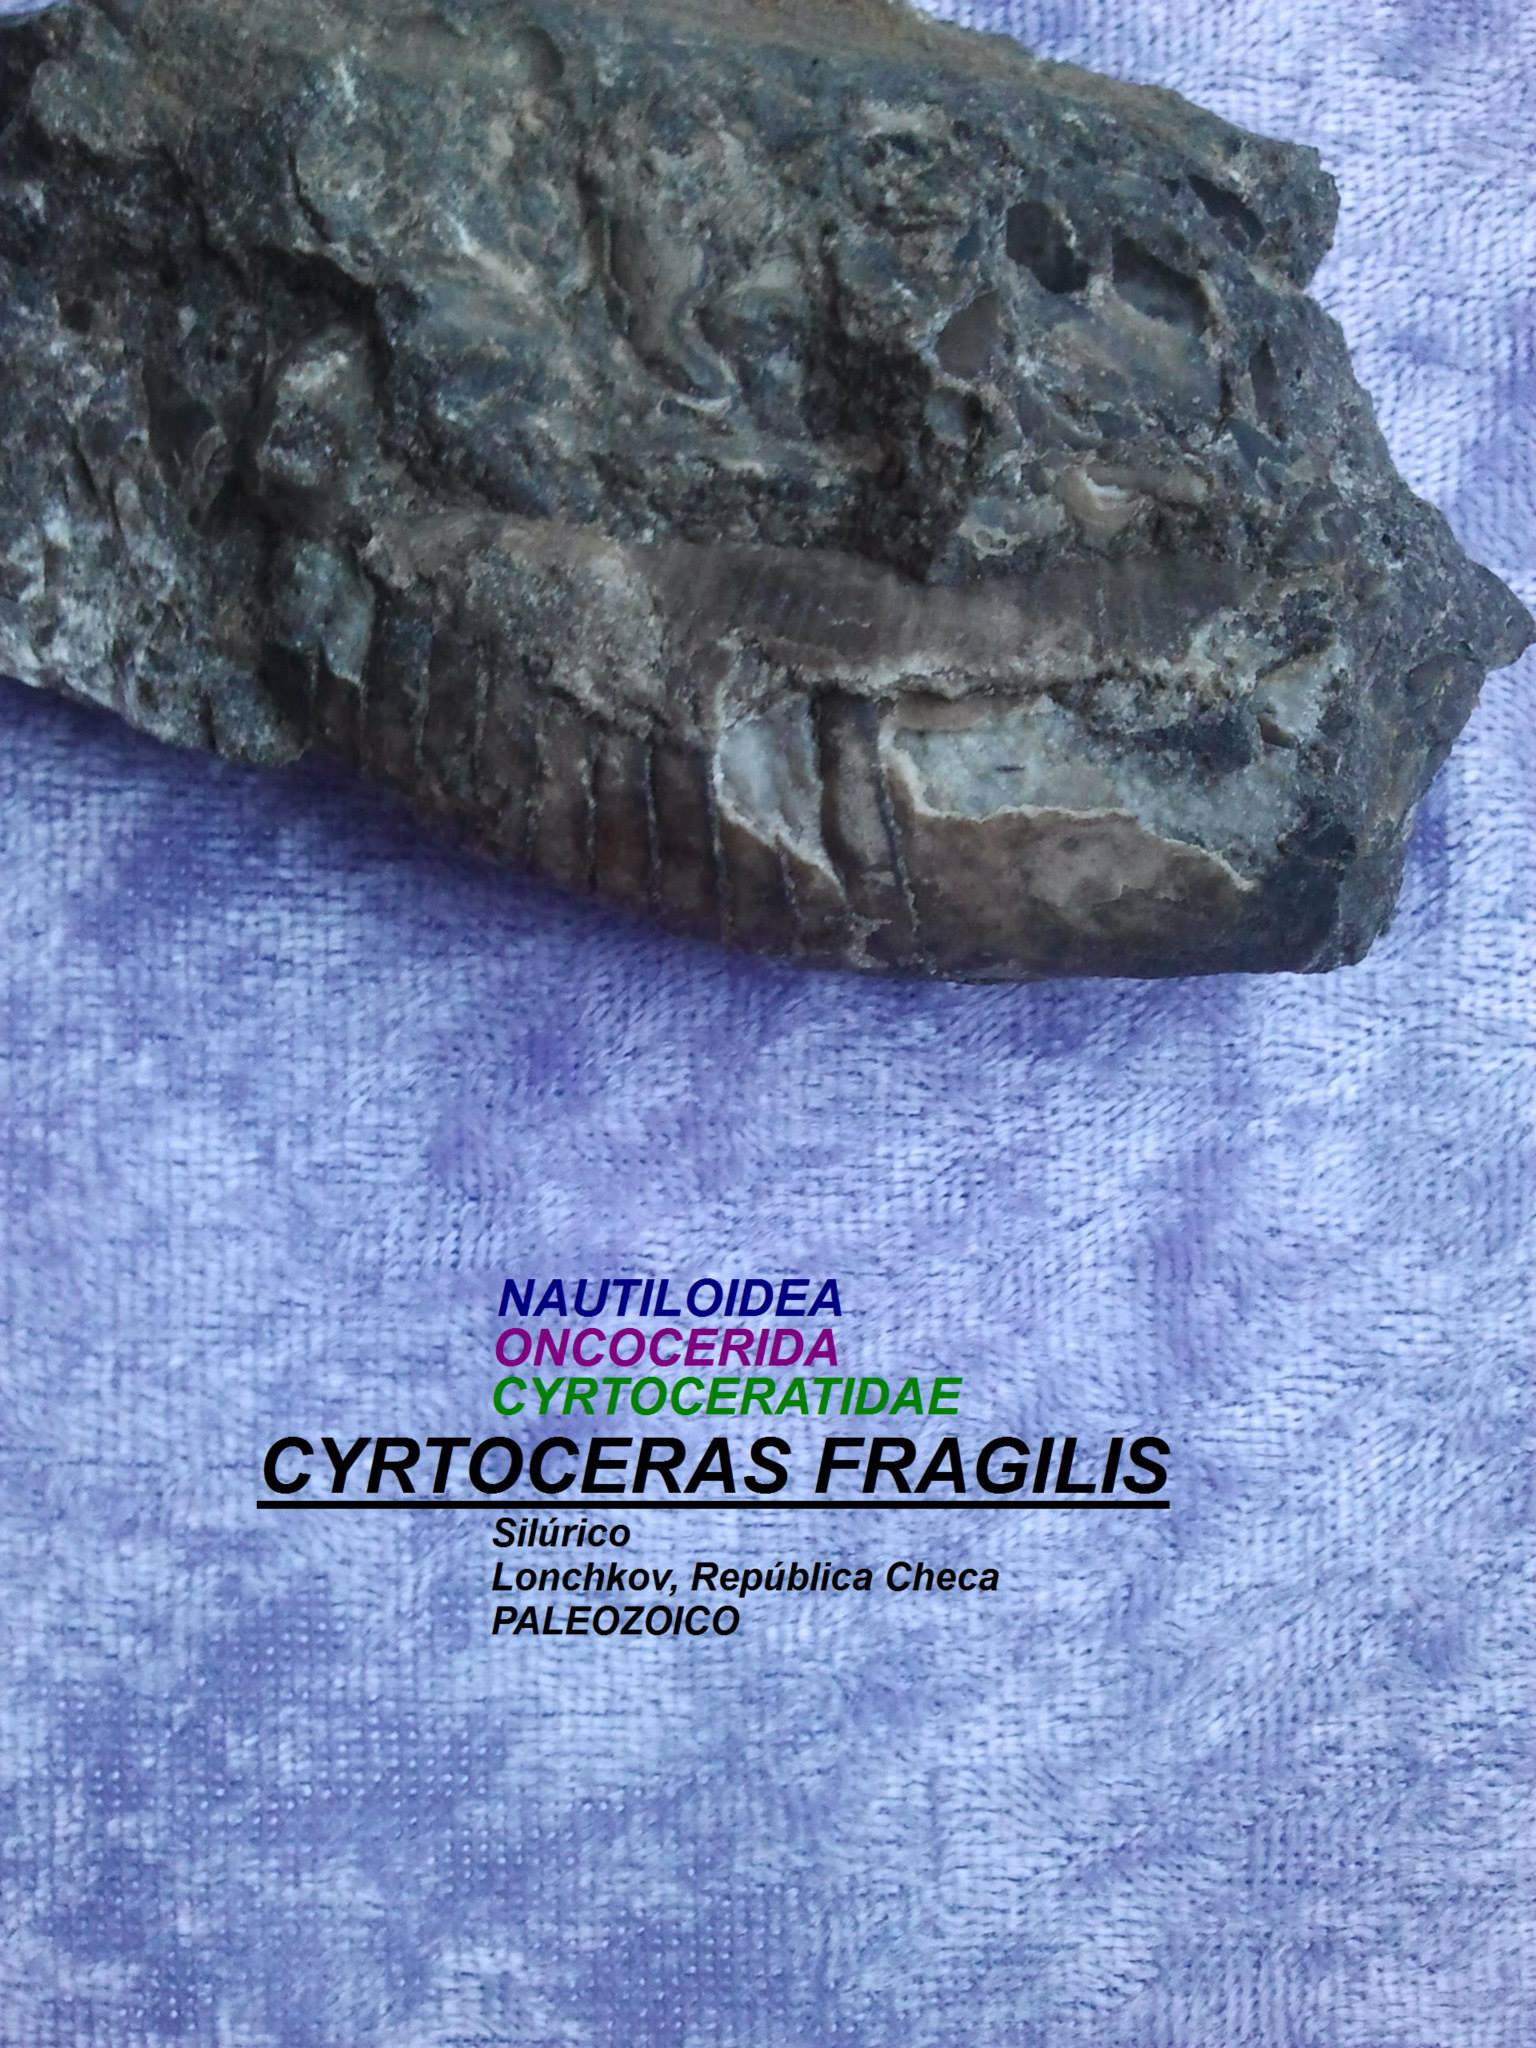 CYRTOCERAS FRAGILIS